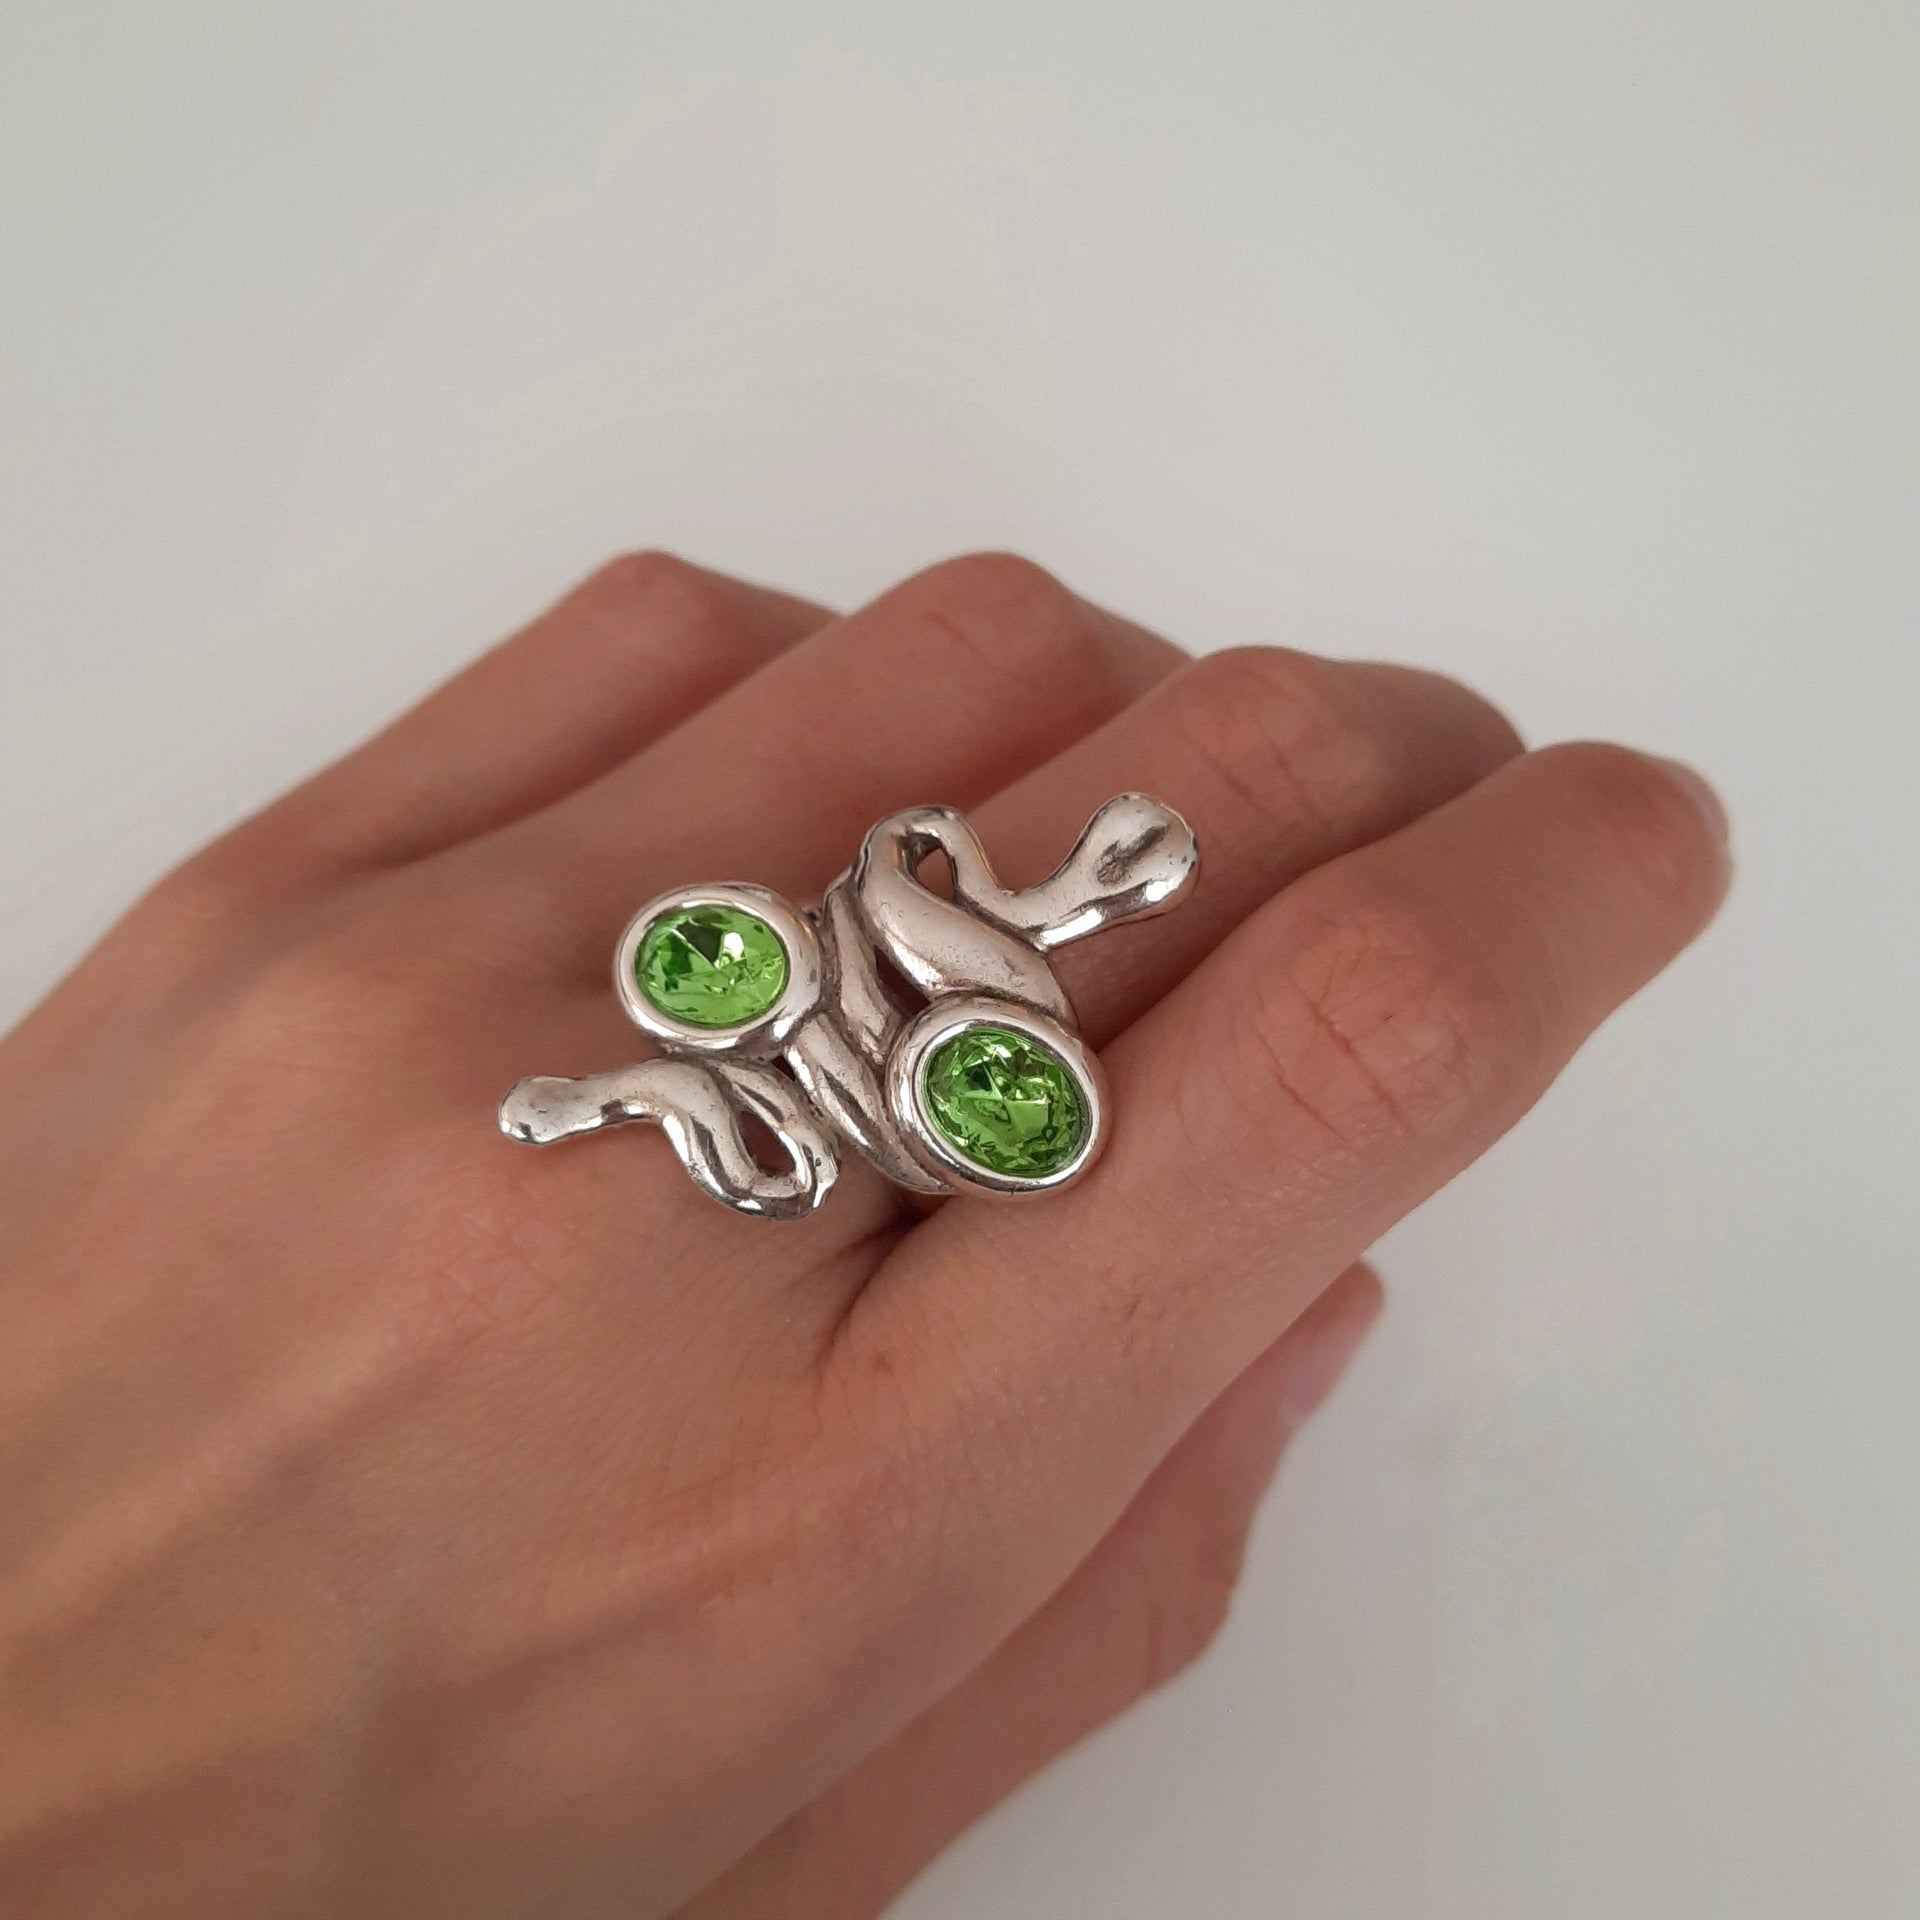 Schlangen Ring Silber mit Steinen - Serpiente Ringe KOOMPLIMENTS Farbe